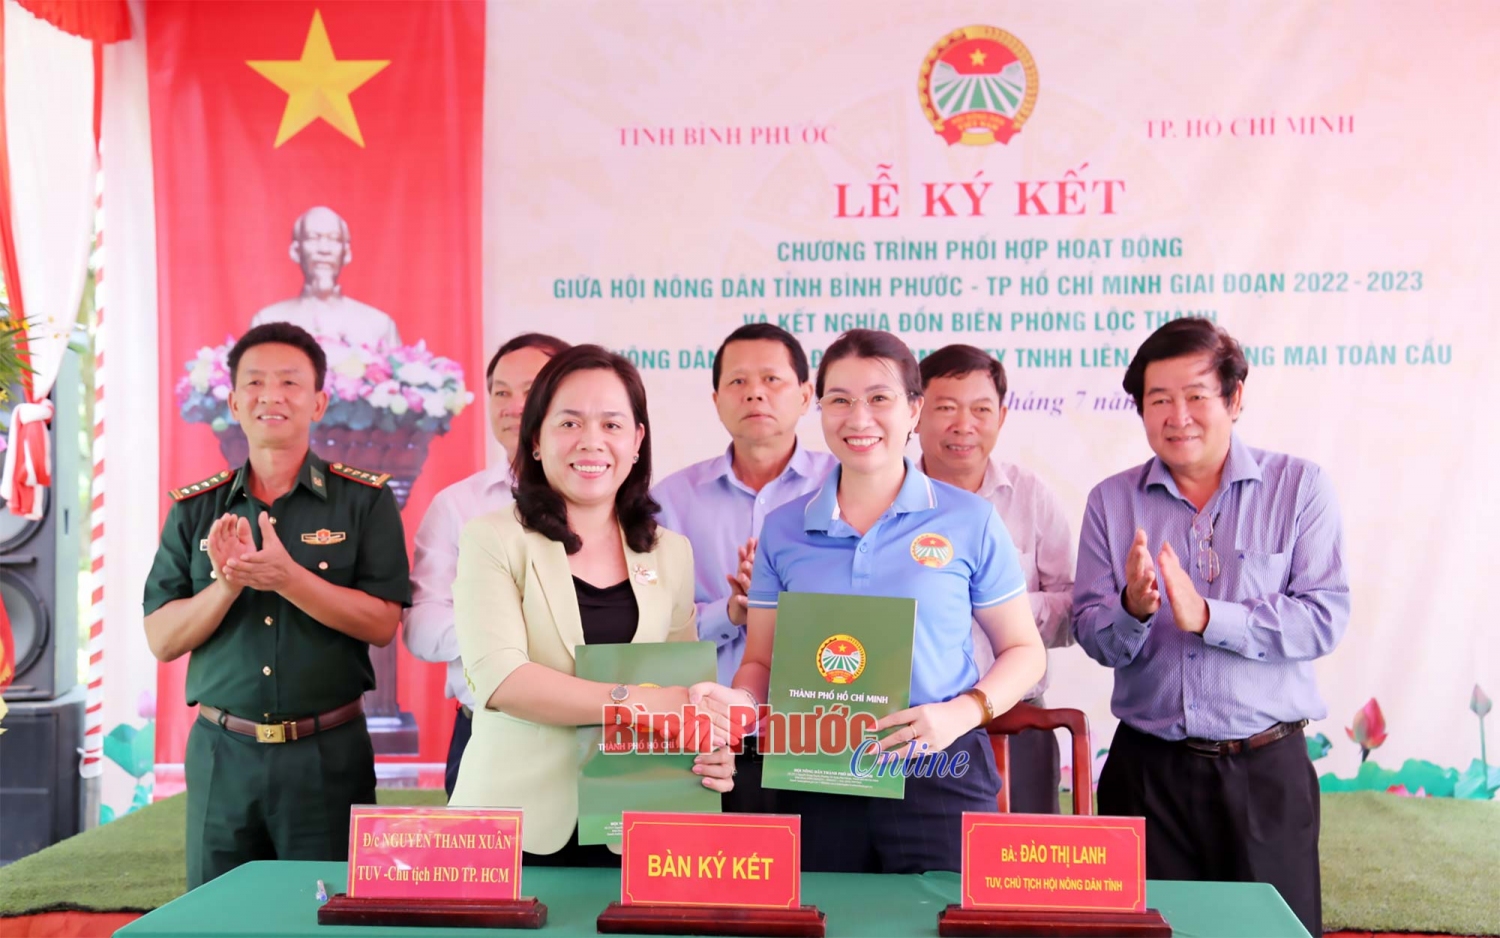 Đại diện lãnh đạo Hội Nông dân TP. Hồ Chí Minh và Hội Nông dân tỉnh Bình Phước ký kết phối hợp hoạt động giai đoạn 2022 - 2023 Nguồn ảnh: Báo Bình Phước